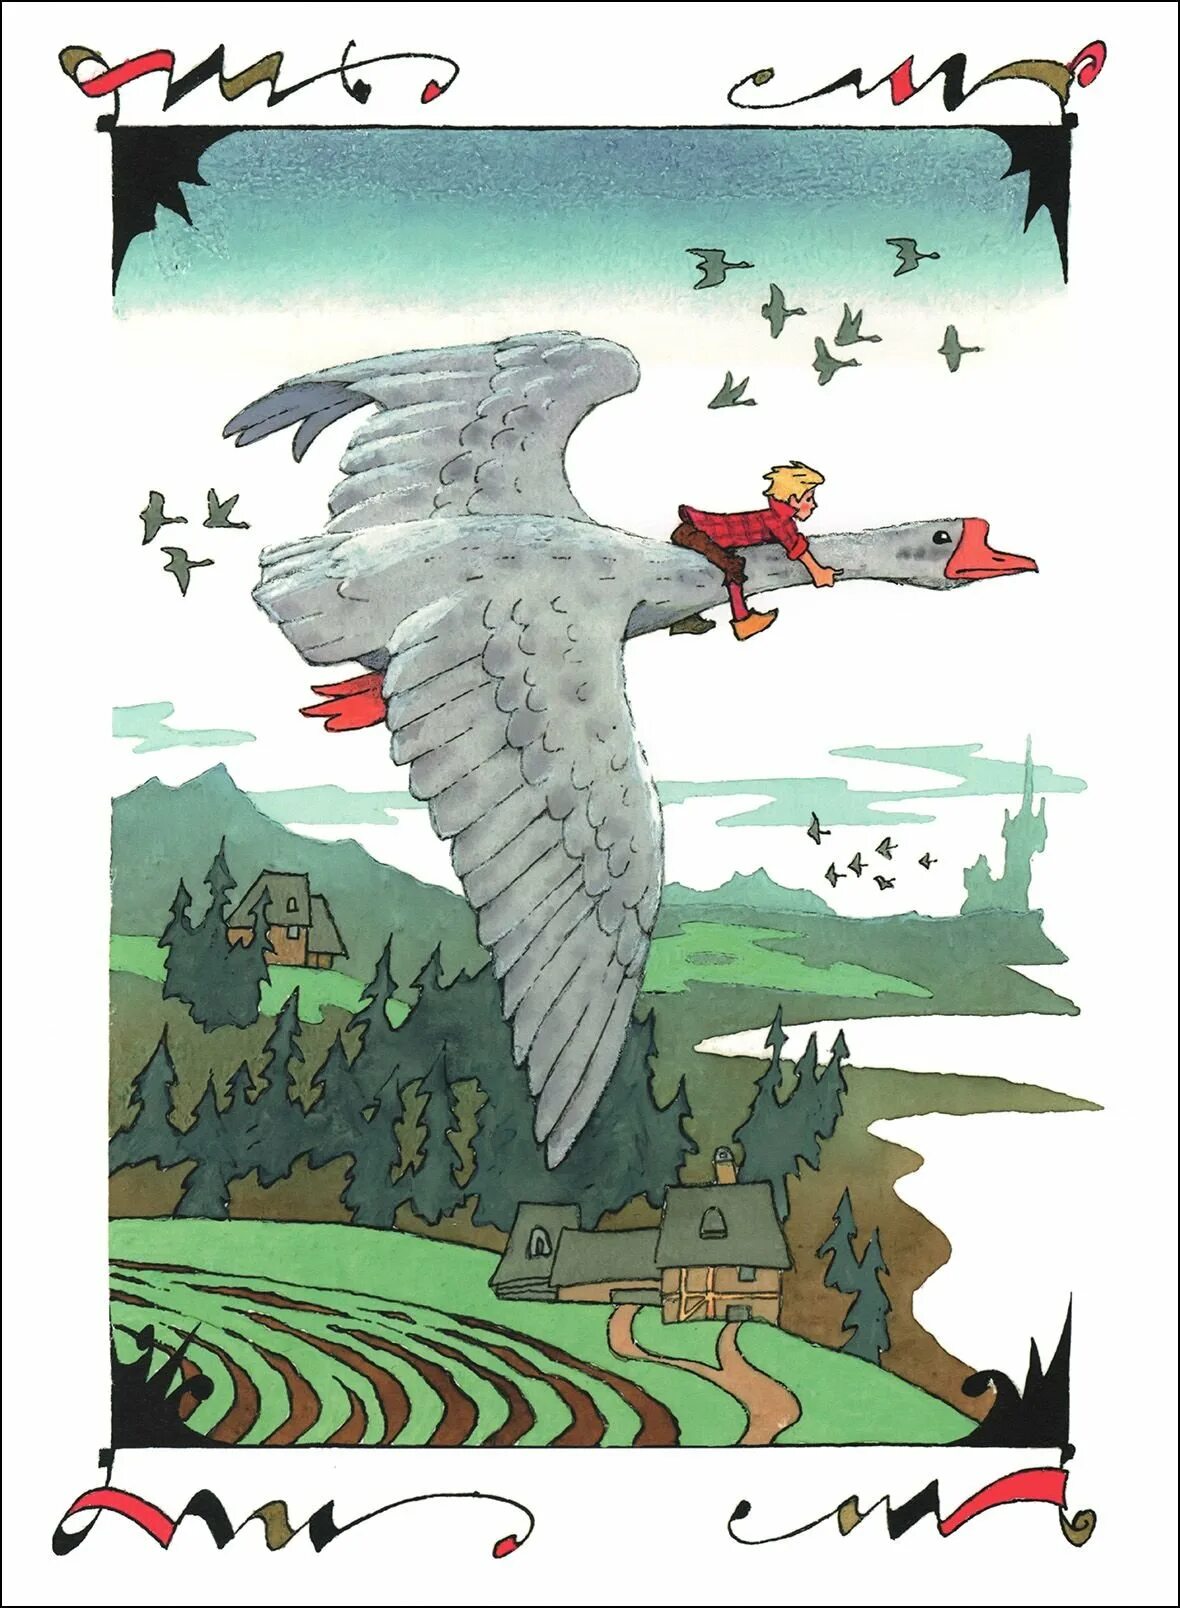 Иллюстрации Лагерлеф сказочное путешествие Нильса с дикими гусями. С.лагерлёф чудесное путешествие Нильса с дикими гусями иллюстрации. Удивительное путешествие нильса с гусями